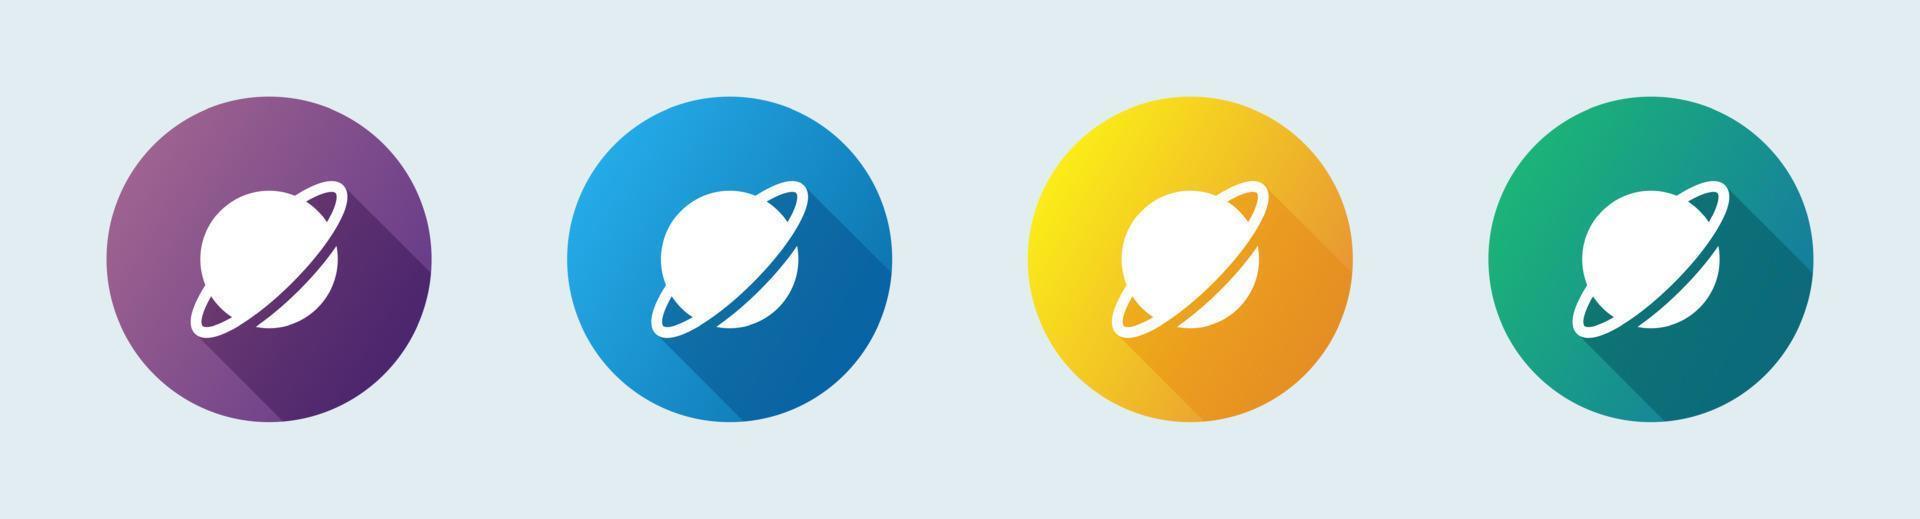 icona del pianeta solido in stile design piatto. illustrazione vettoriale di segni di asteroidi.